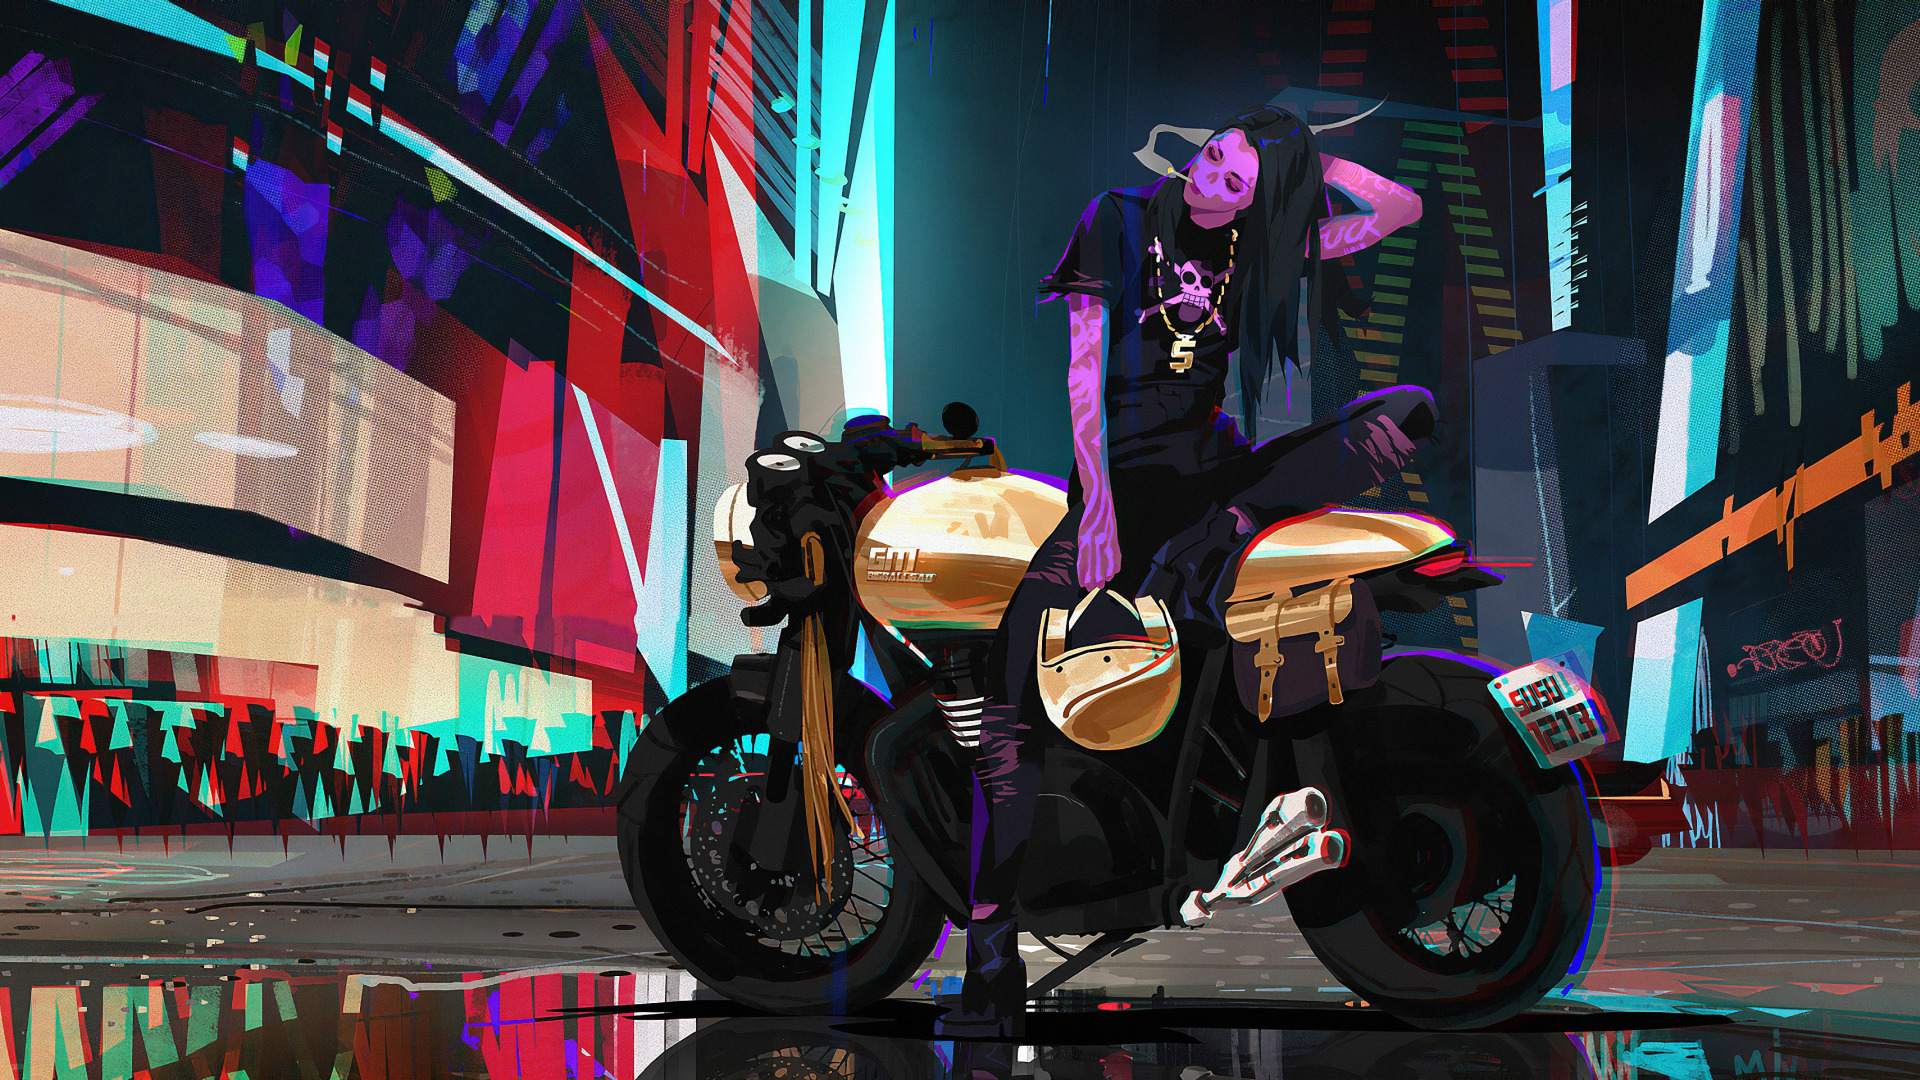 Cyberpunk motorcycle art фото 91